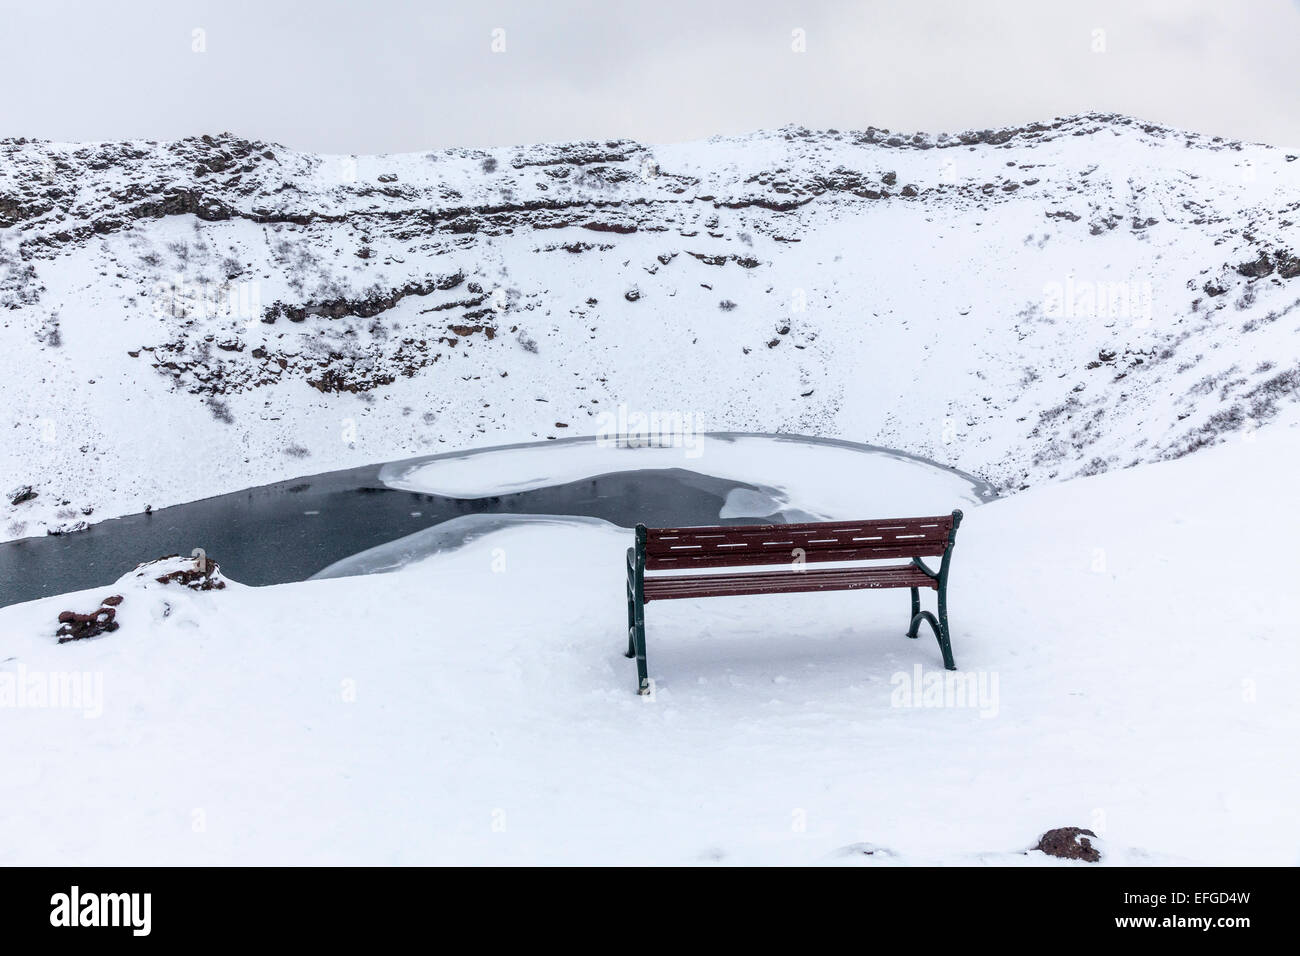 La caldera rocciose di Kerid (o) Kerith vulcano e congelato il cratere del lago in Islanda, una popolare destinazione turistica in inverno durante una nevicata Foto Stock